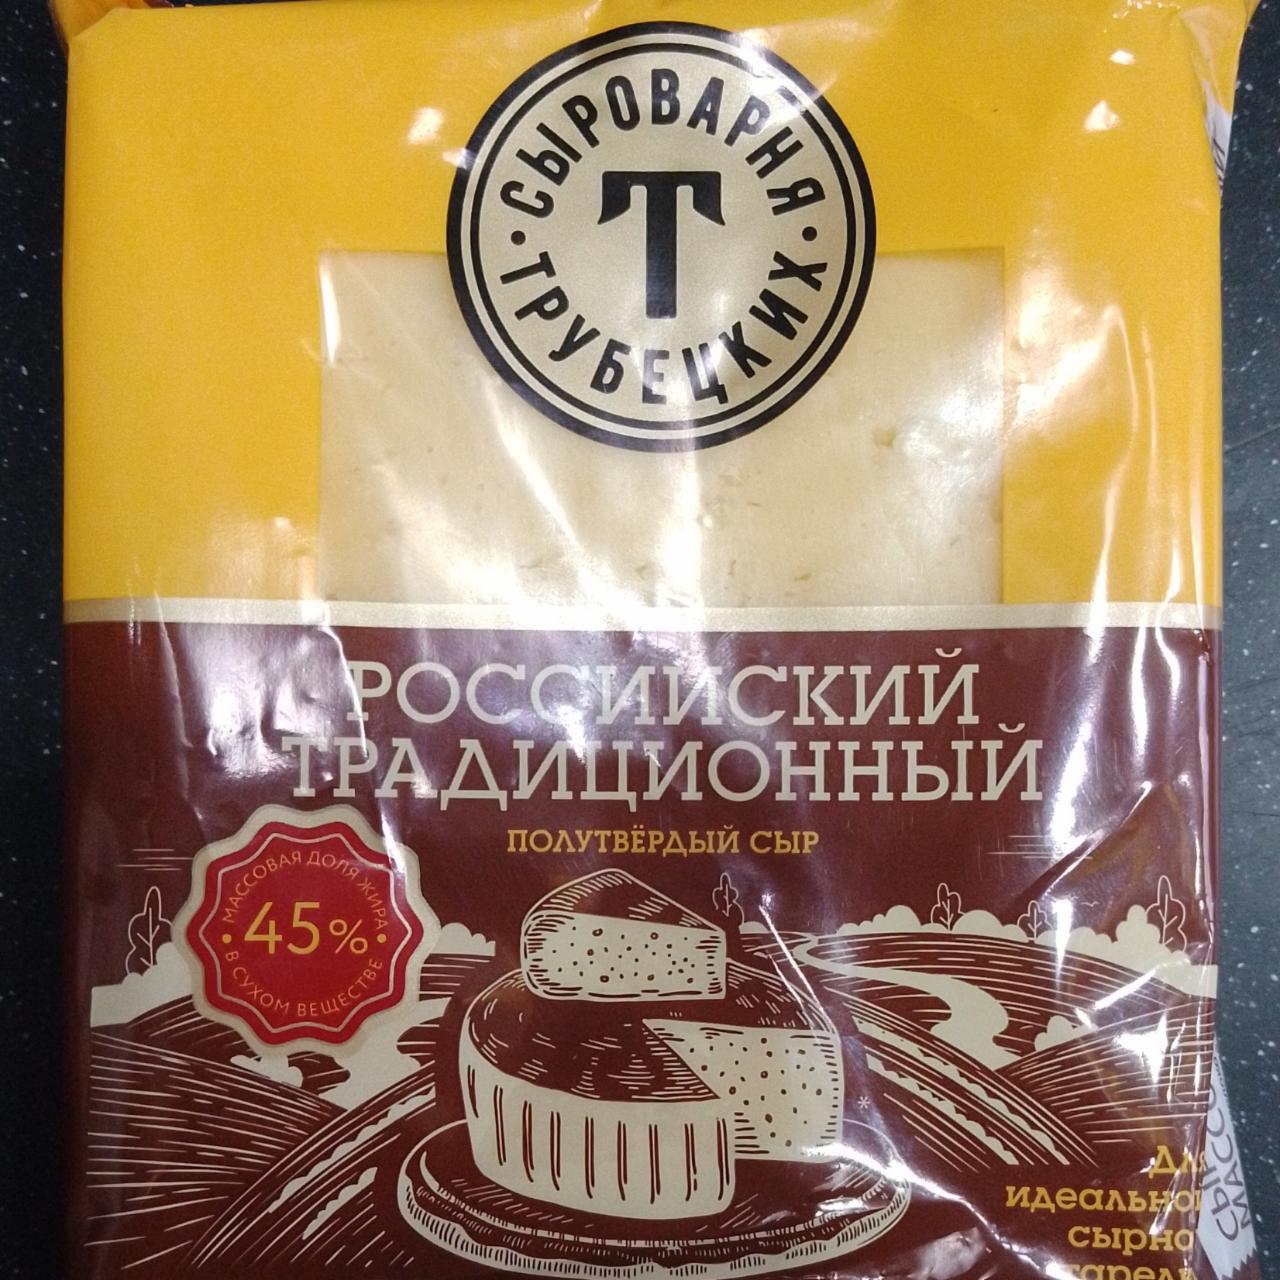 Фото - российский традиционный полутвердый сыр Сыроварня Трубецких